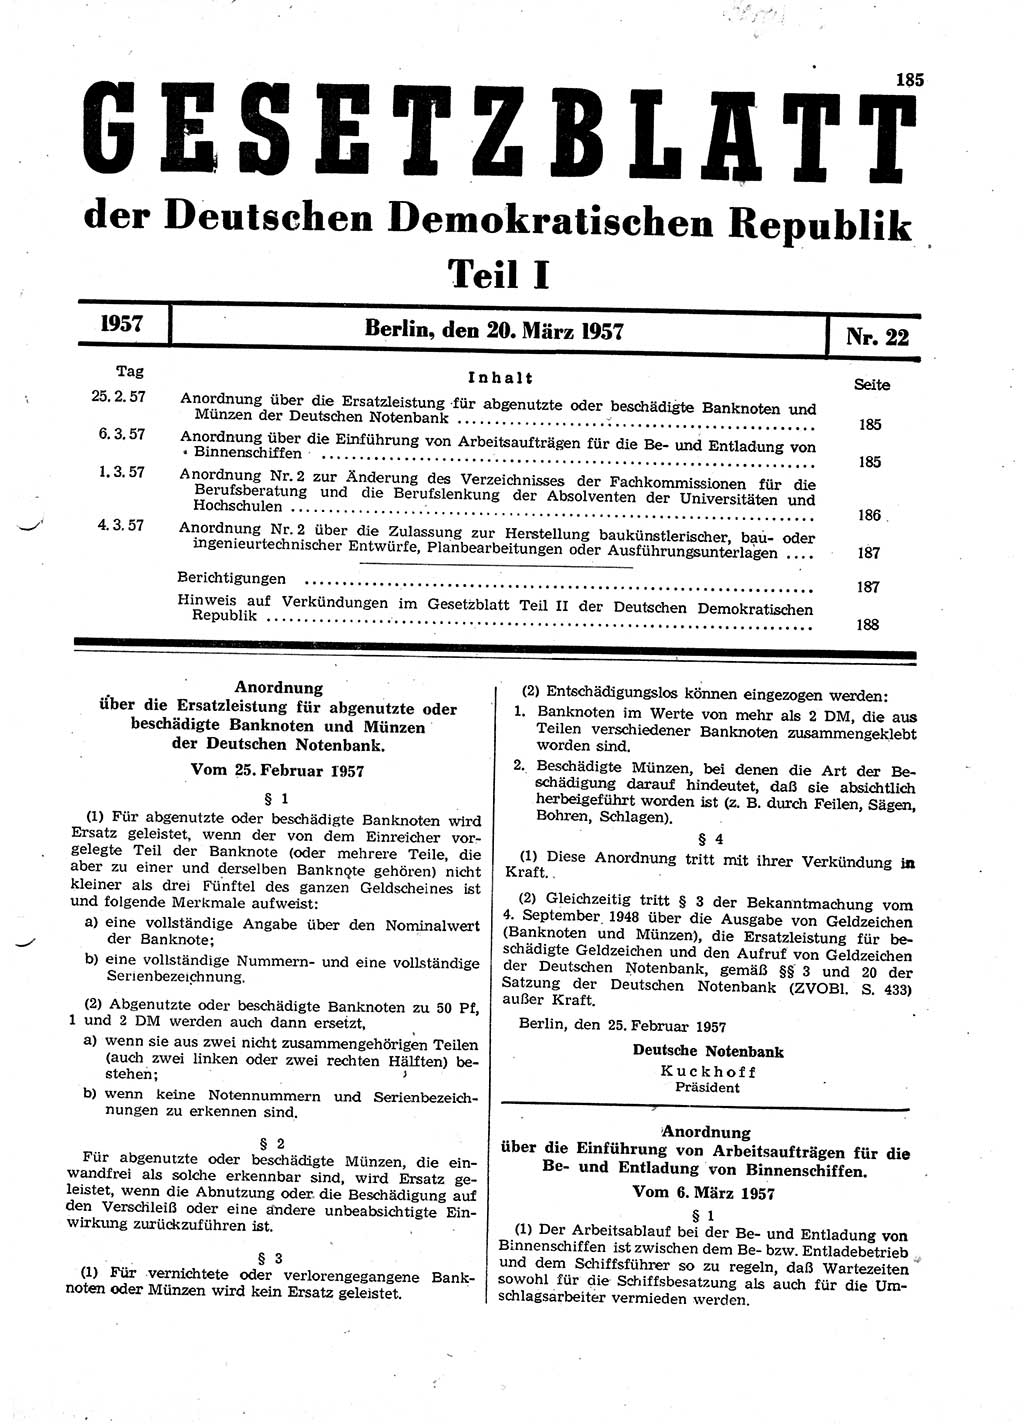 Gesetzblatt (GBl.) der Deutschen Demokratischen Republik (DDR) Teil Ⅰ 1957, Seite 185 (GBl. DDR Ⅰ 1957, S. 185)